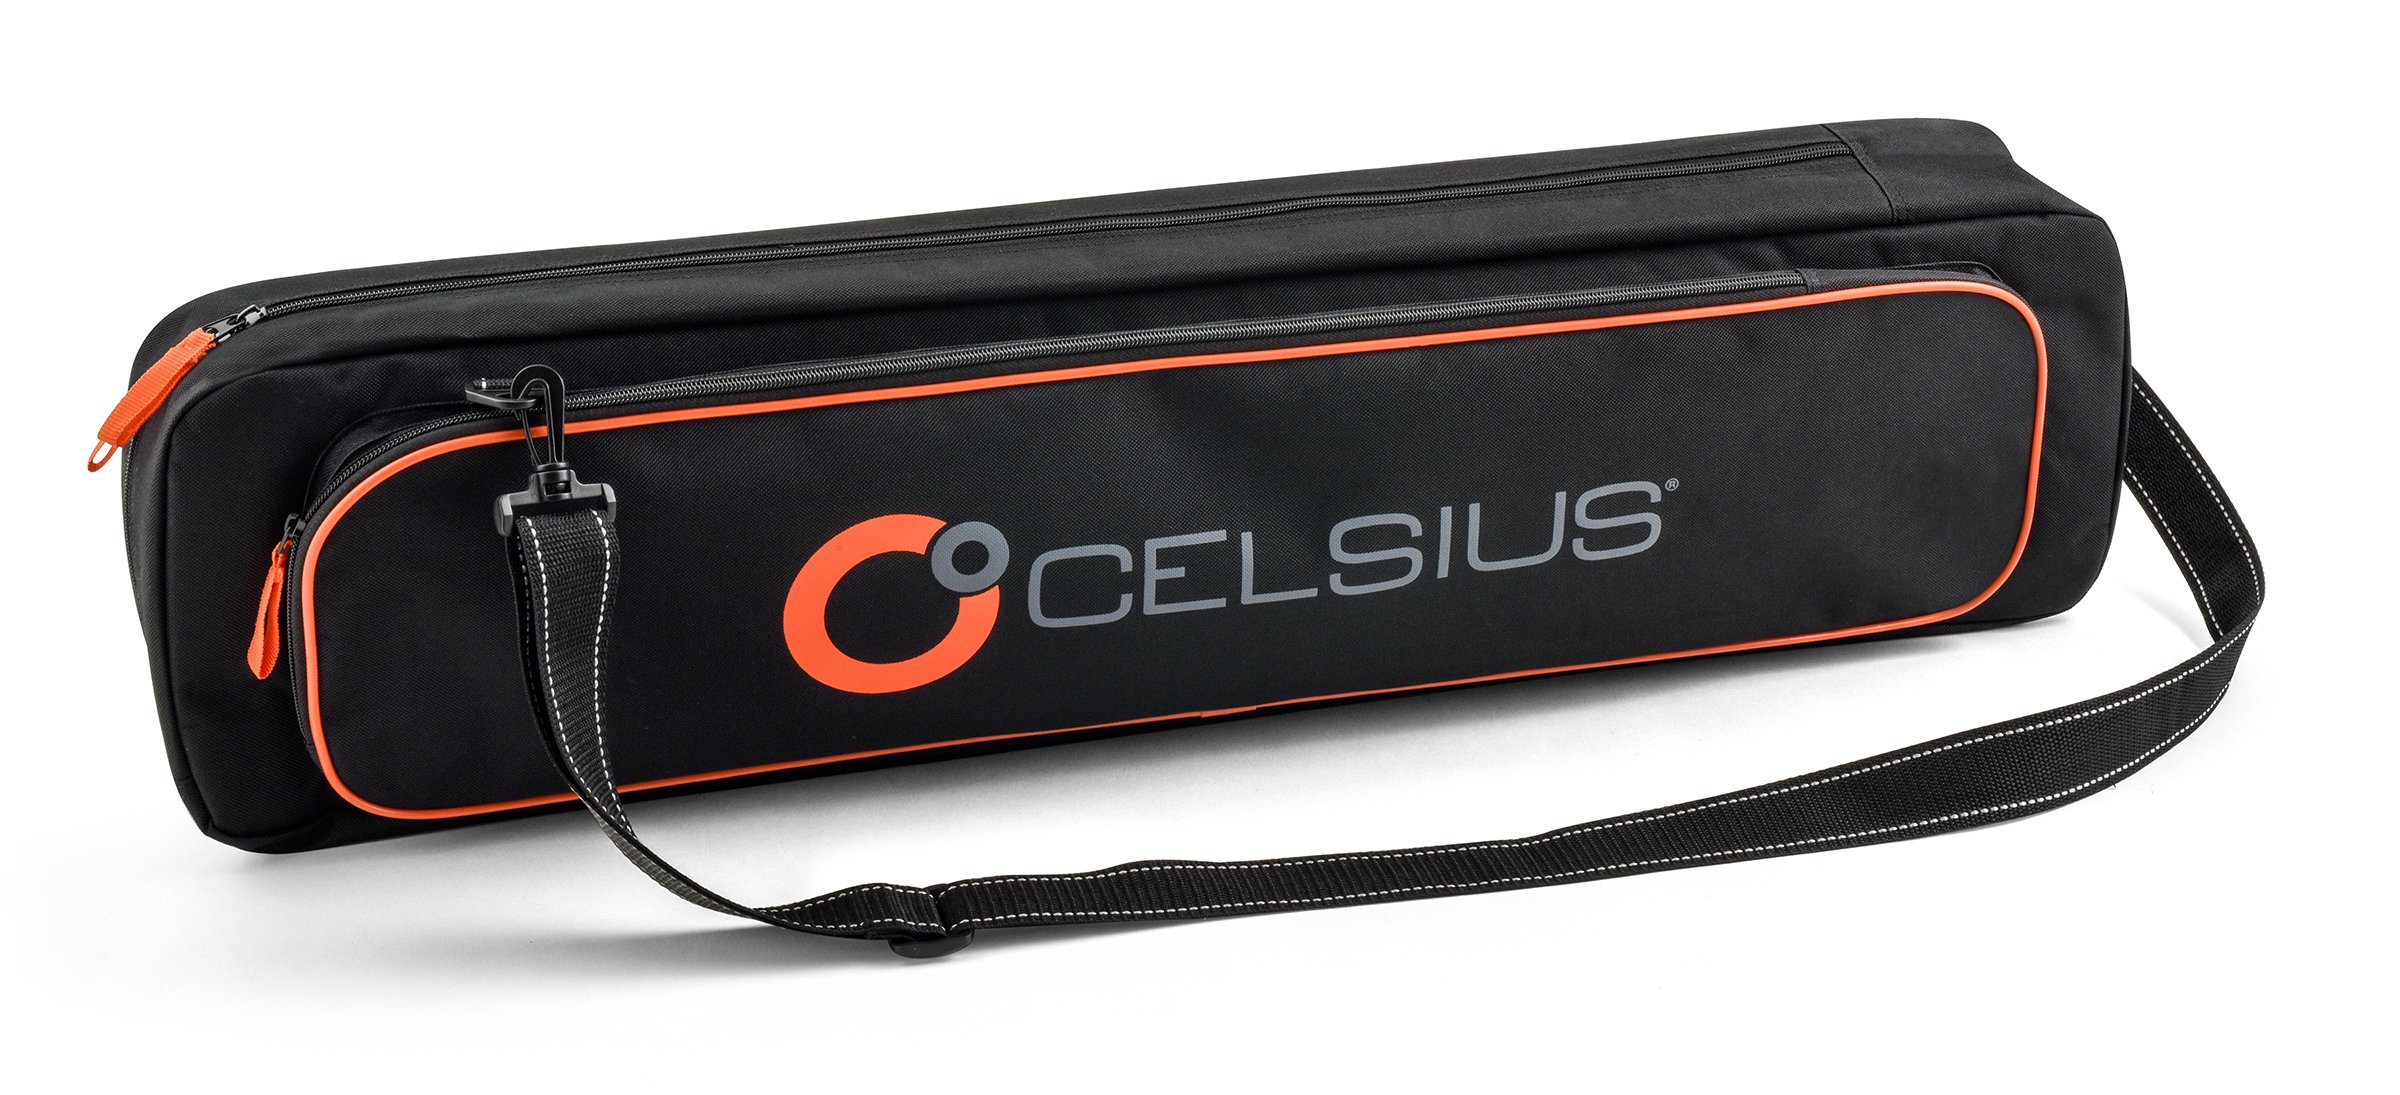 Celsius Basic Ice Rod CEL-BASRC Storage Case Holdsup to 30